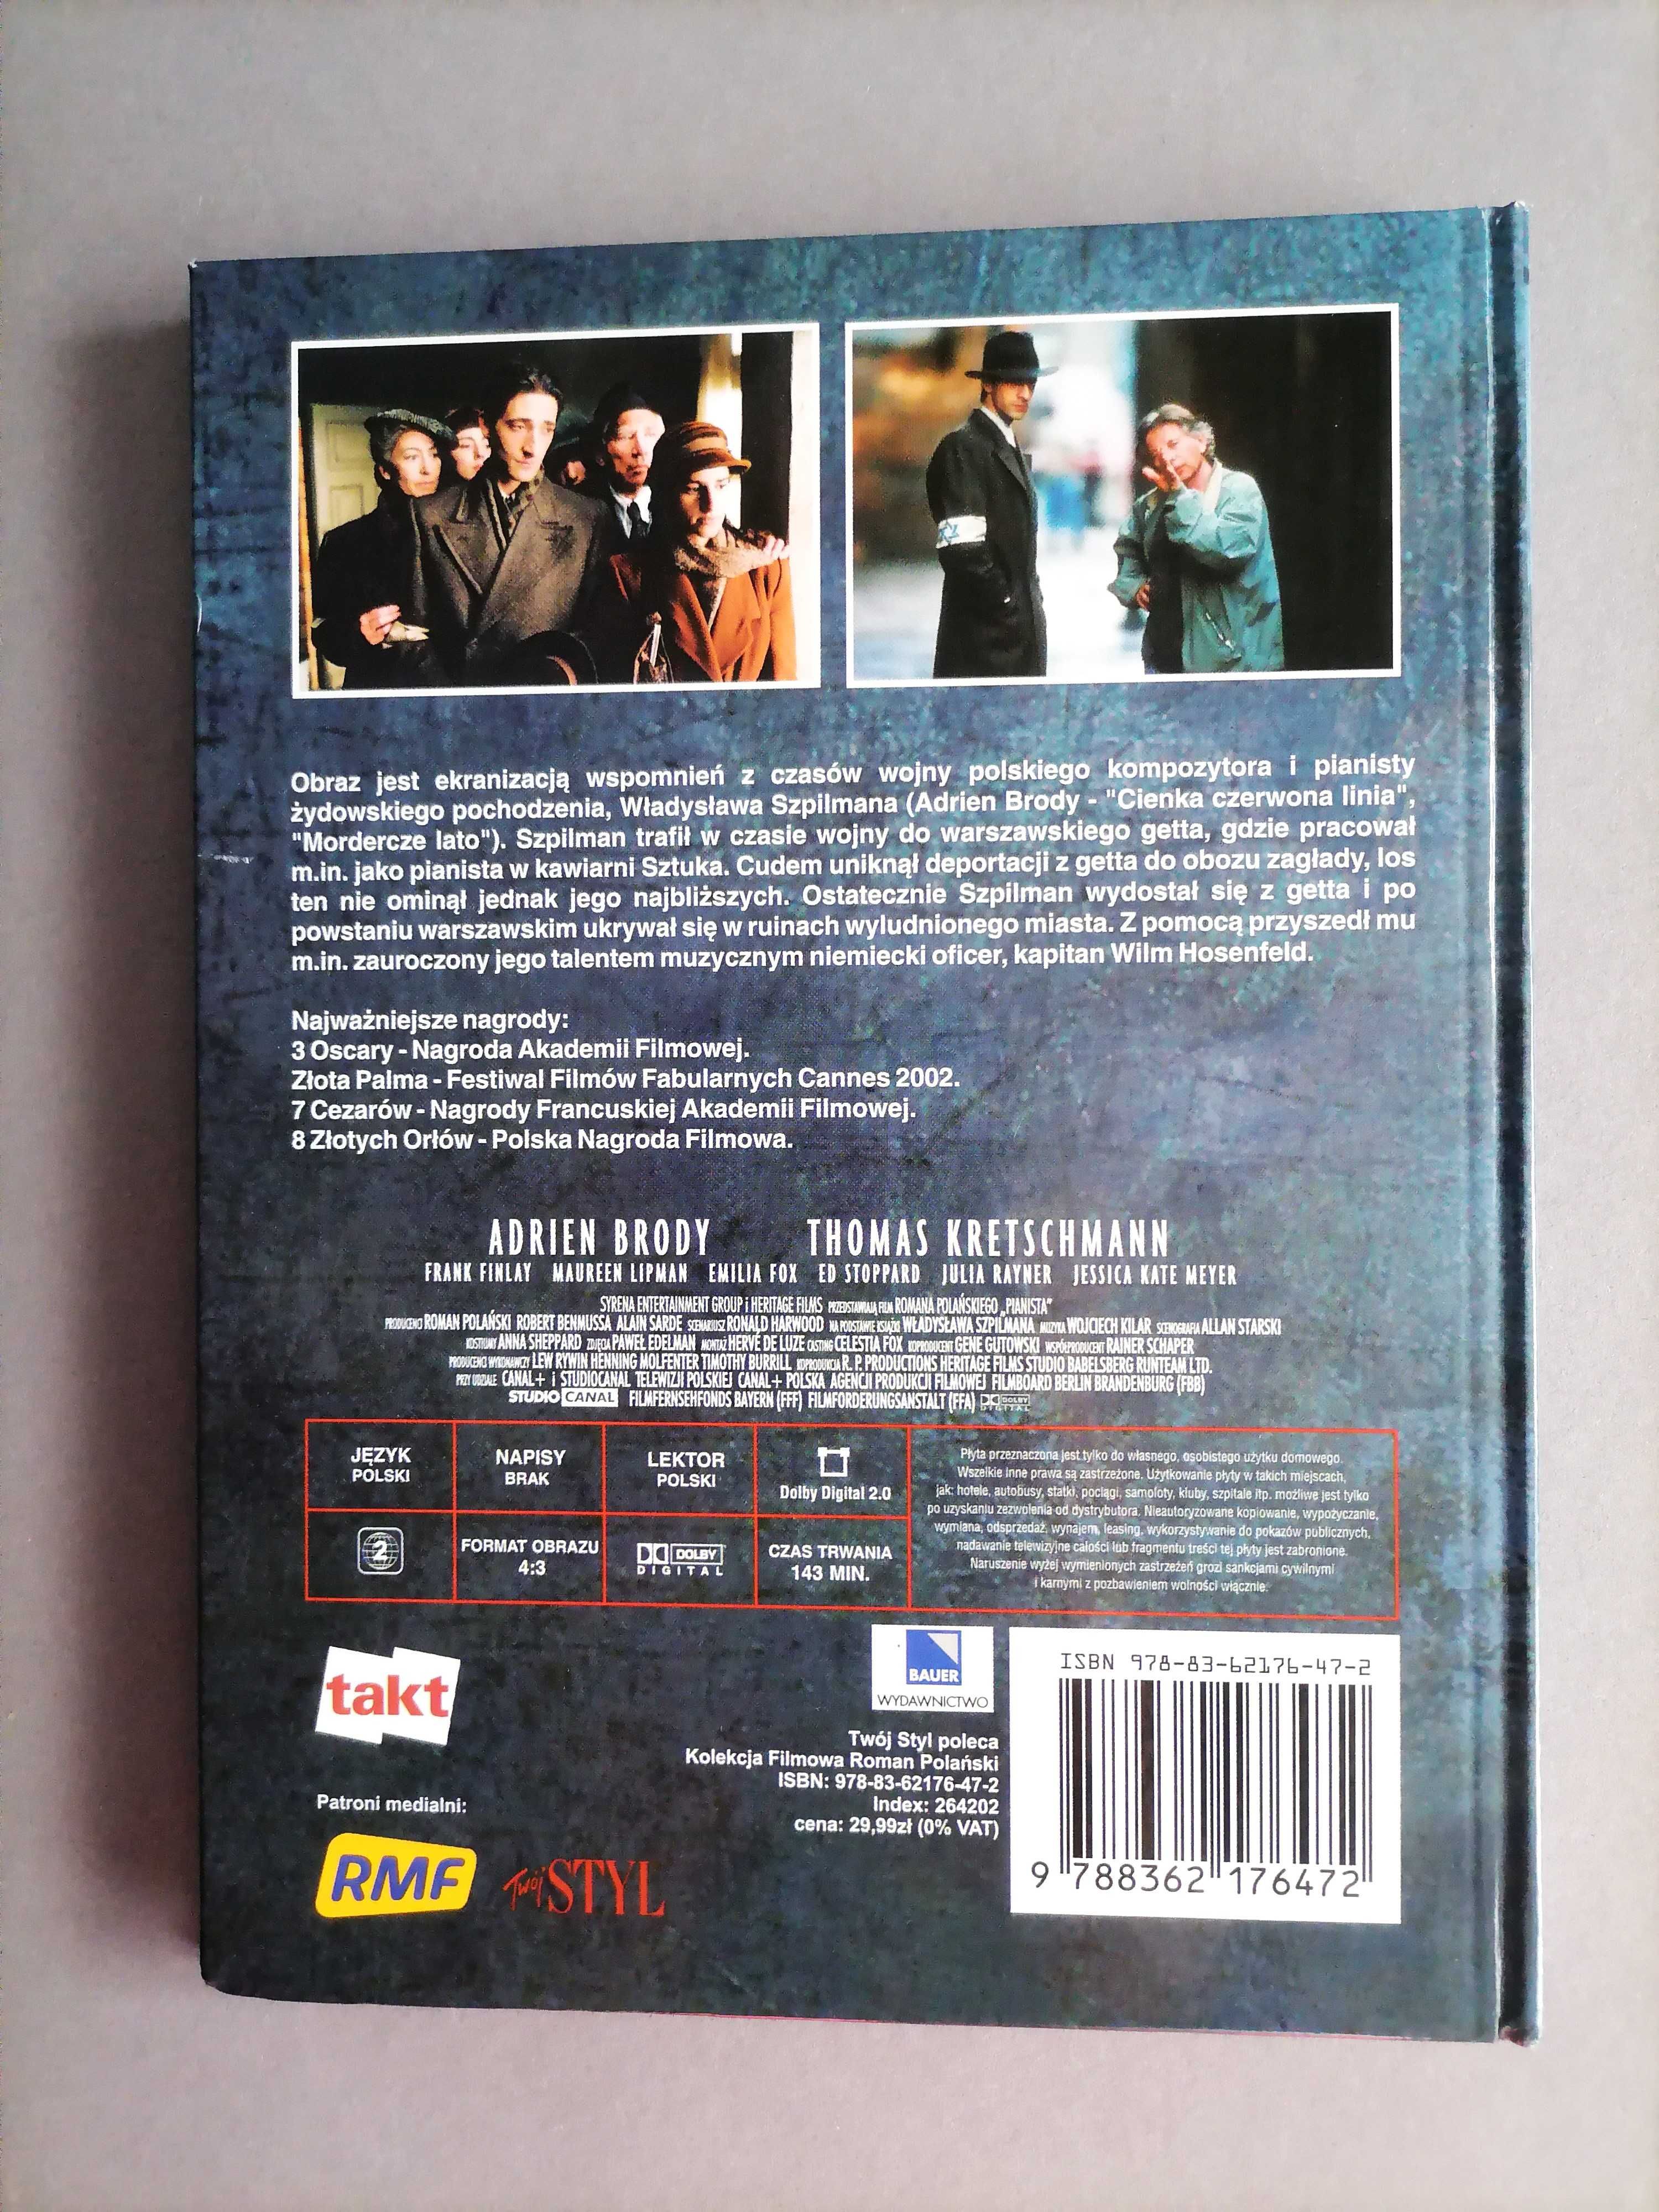 Pianista - DVD Kolekcja Filmowa - Polański